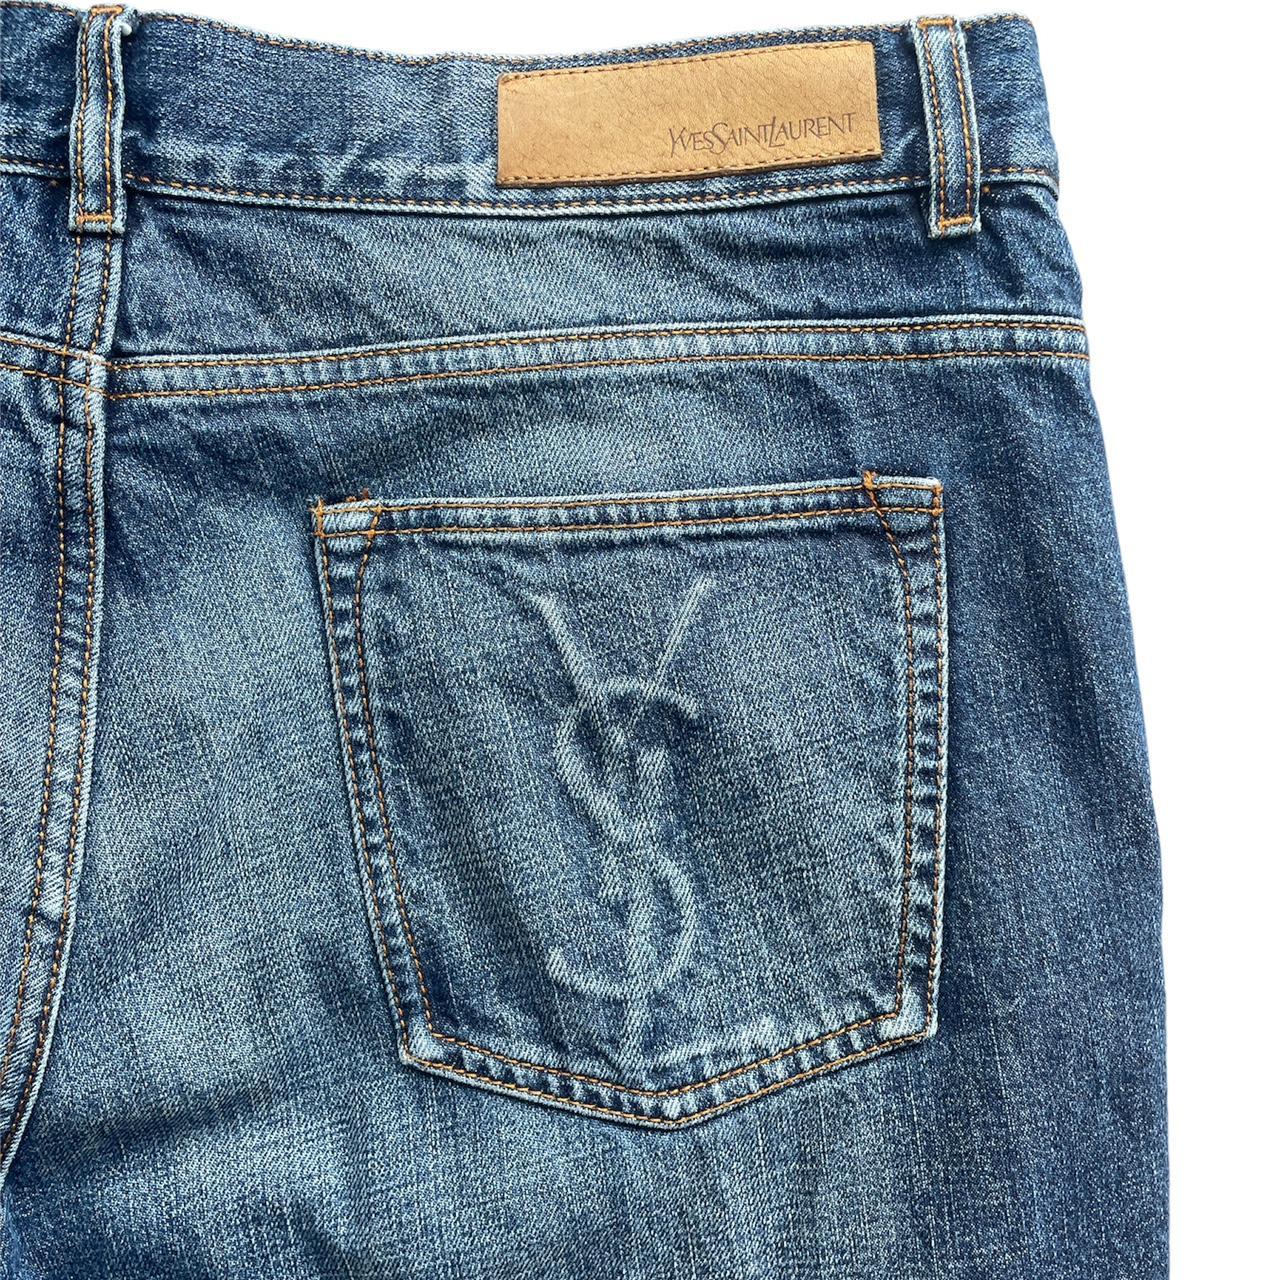 Rare YSL blue denim jeans (Authentic) Size 52 The... - Depop